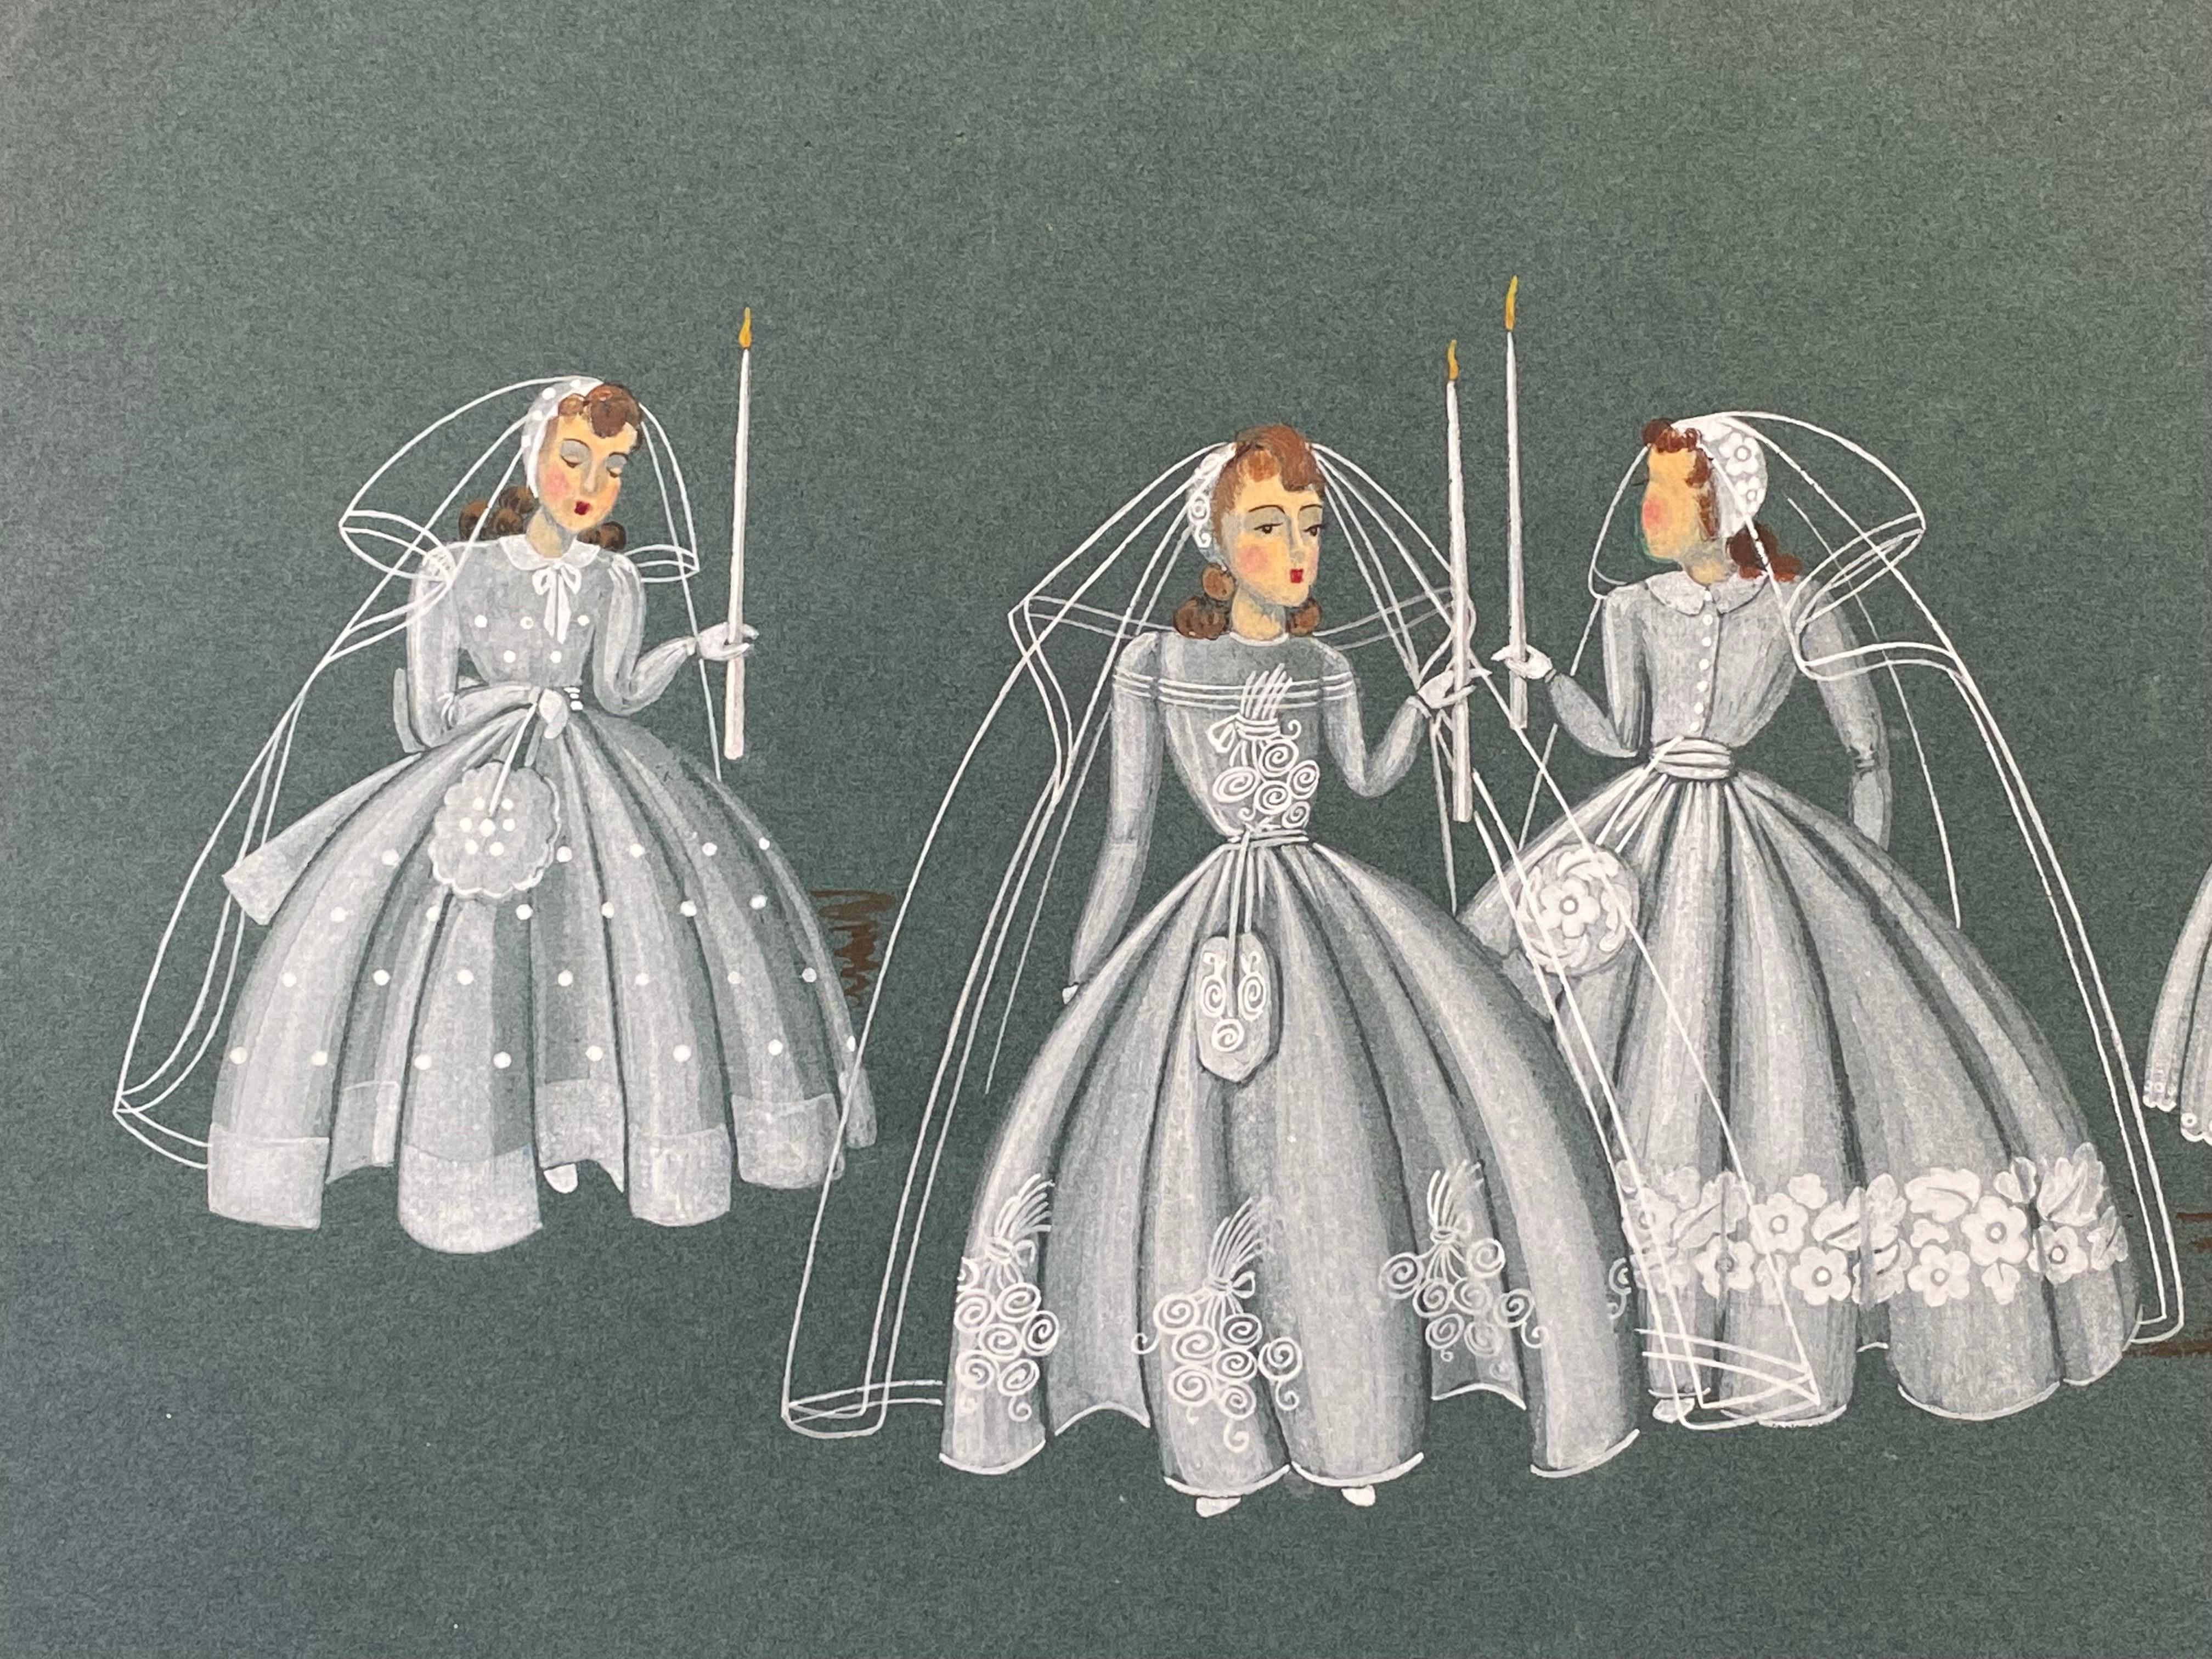 Mode Illustration aus den 1940er Jahren – Vier Brautinnen halten Kerzen – Painting von Geneviève Thomas